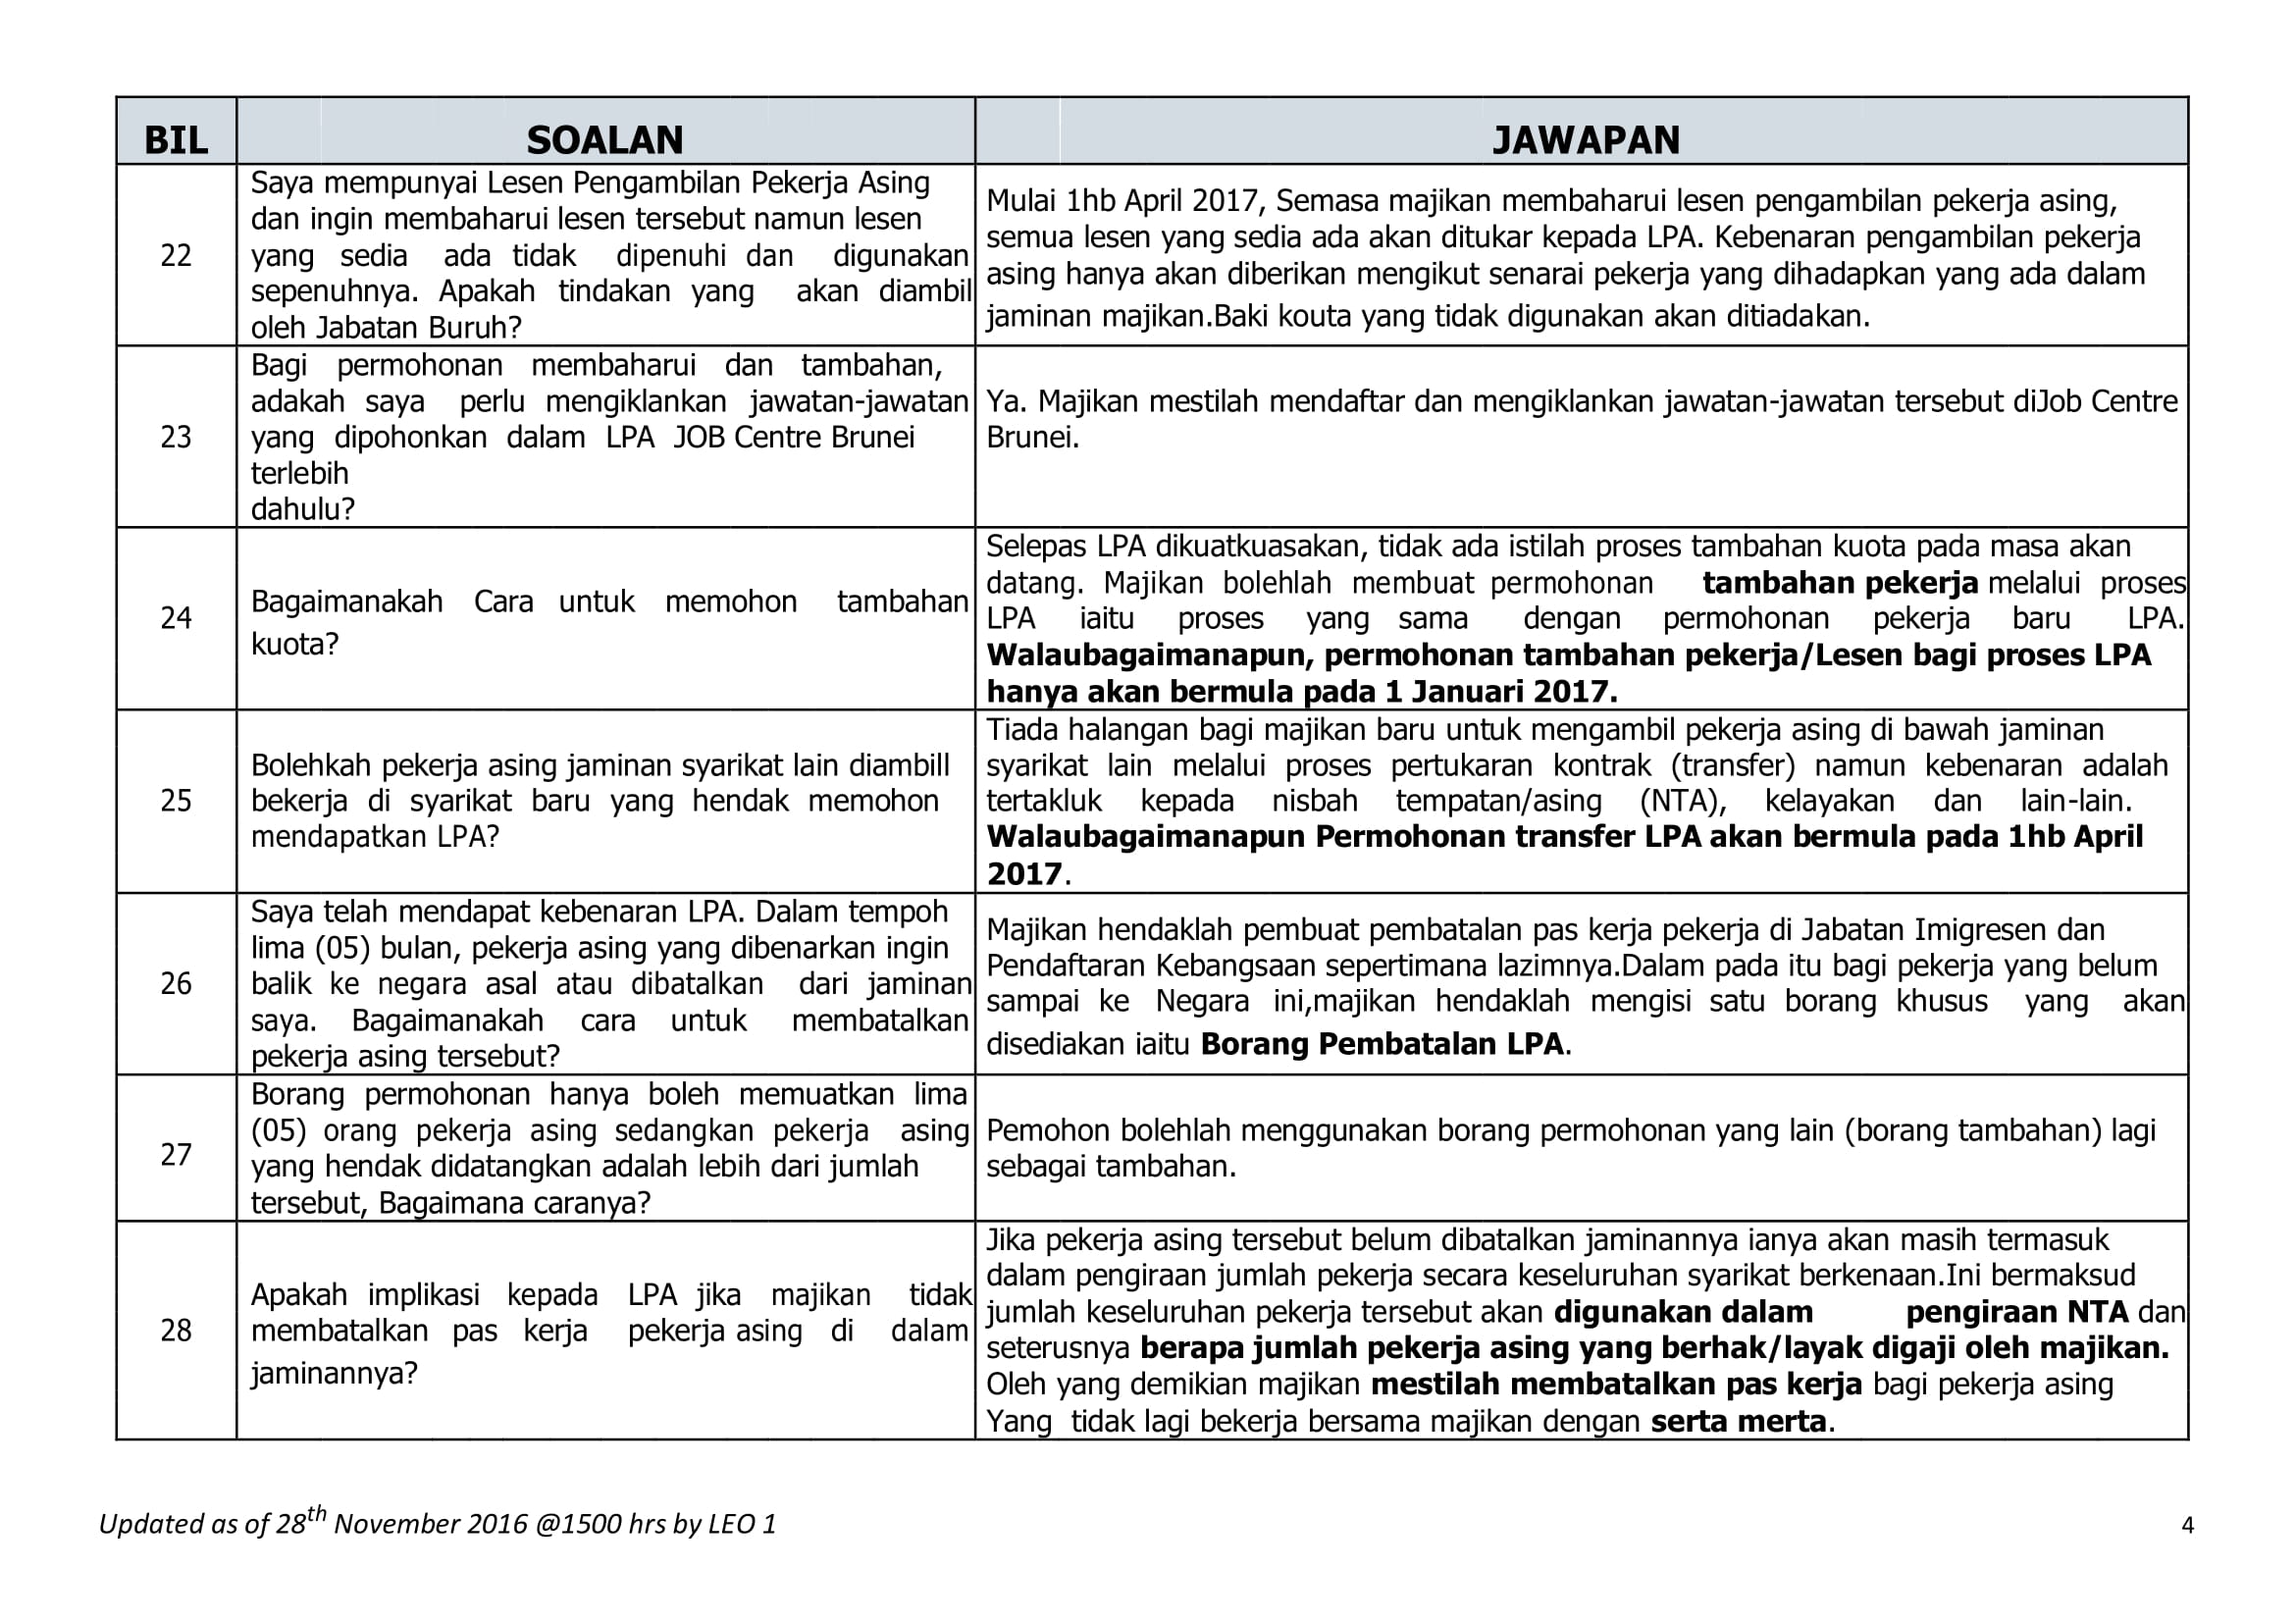 FAQ malay version-4.jpg